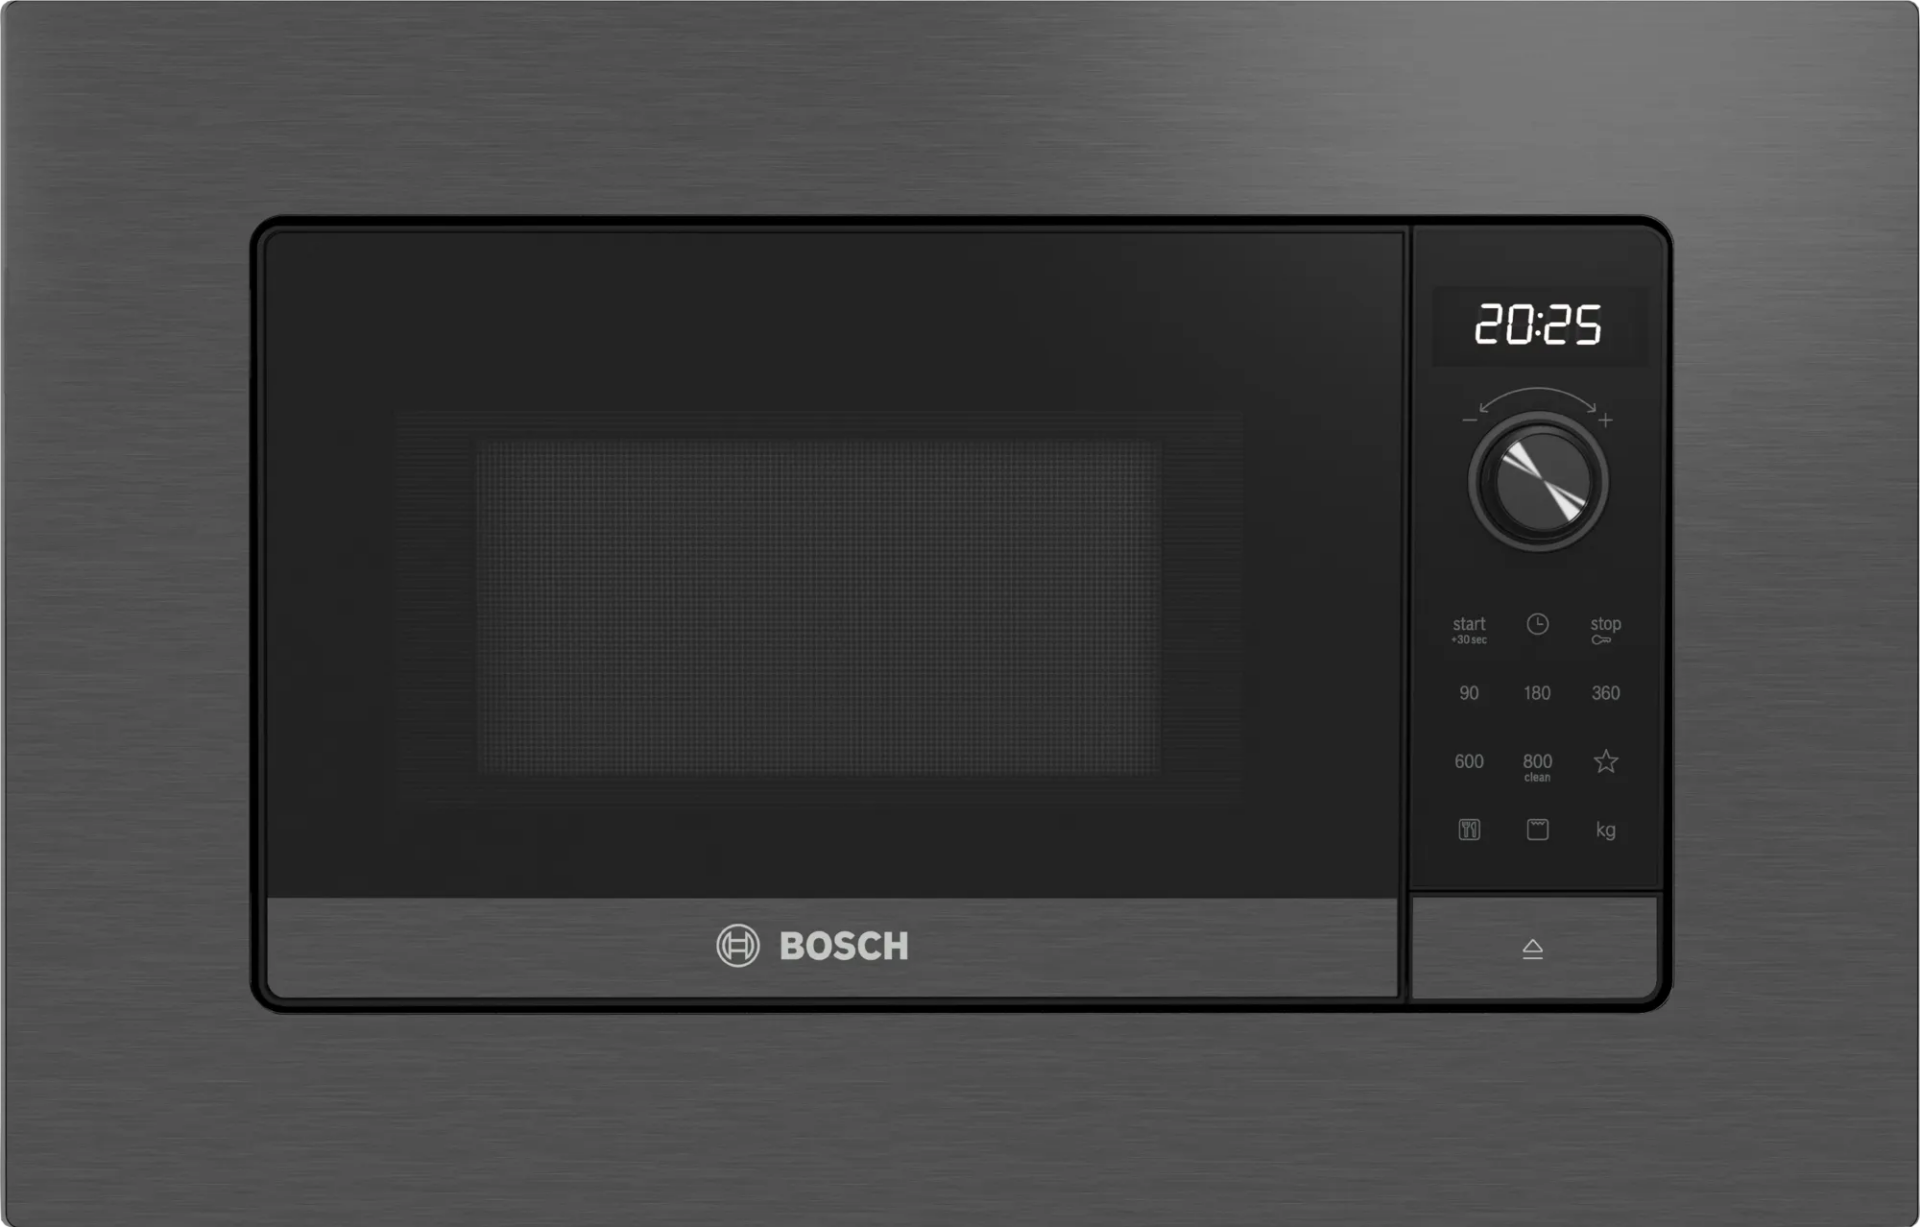 Bosch BEL623MD3 20 lt Siyah Ankastre Mikrodalga Fırın